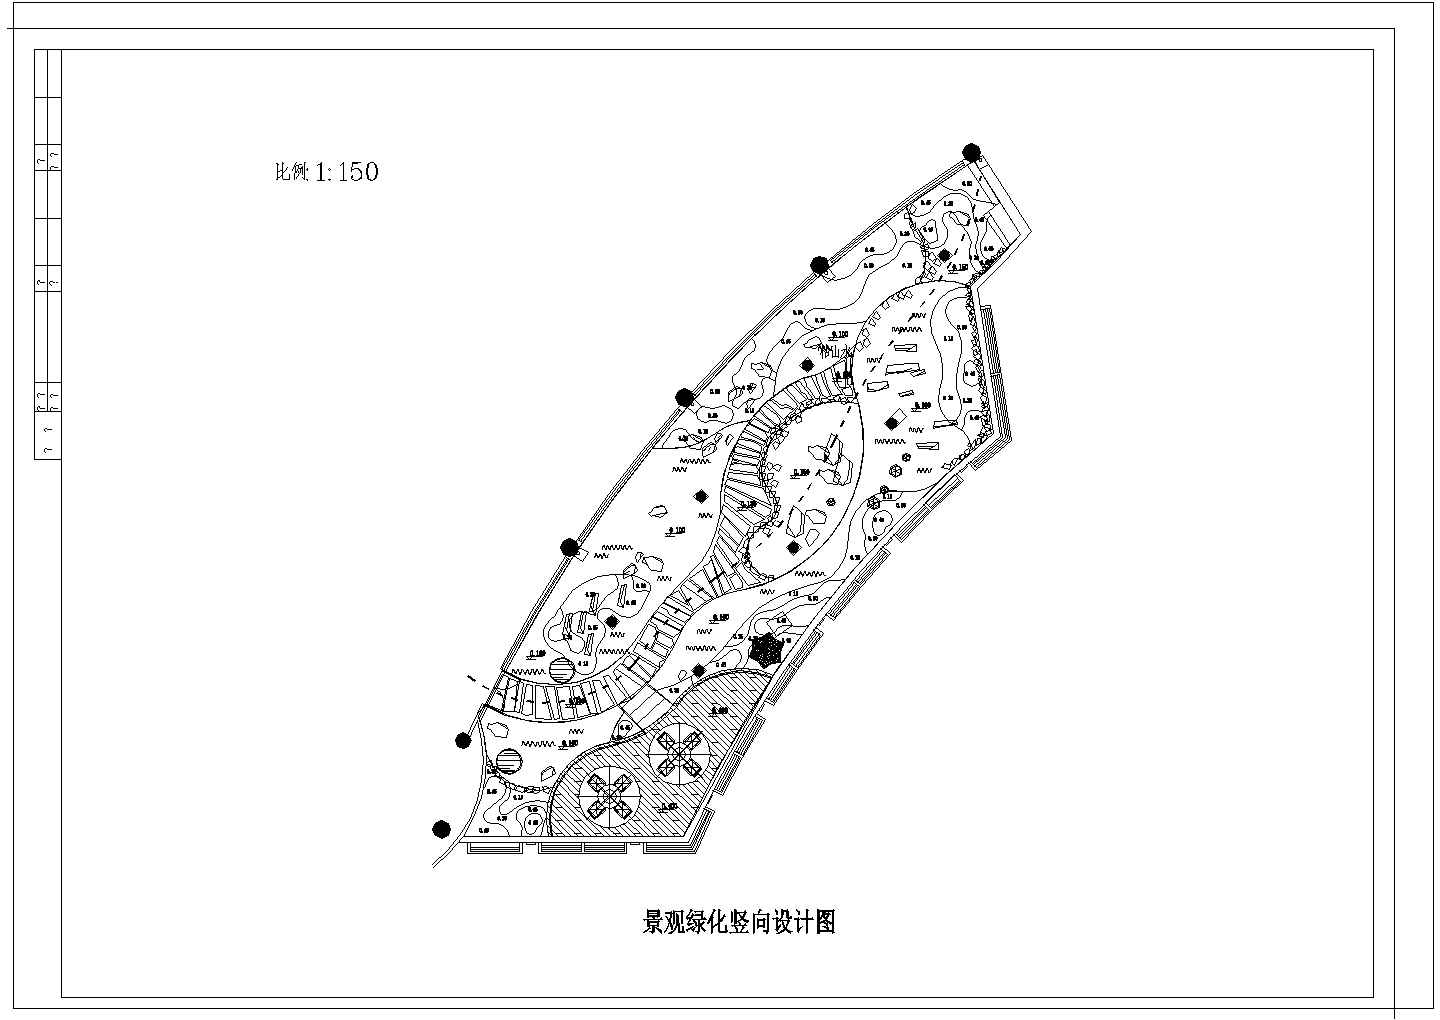 上海某会所屋顶景观绿化平面图 方格网定位图 景观绿化竖向设计图 灯光及给水平面布置图 2剖面 苗木表 设计说明 屋顶承重预算